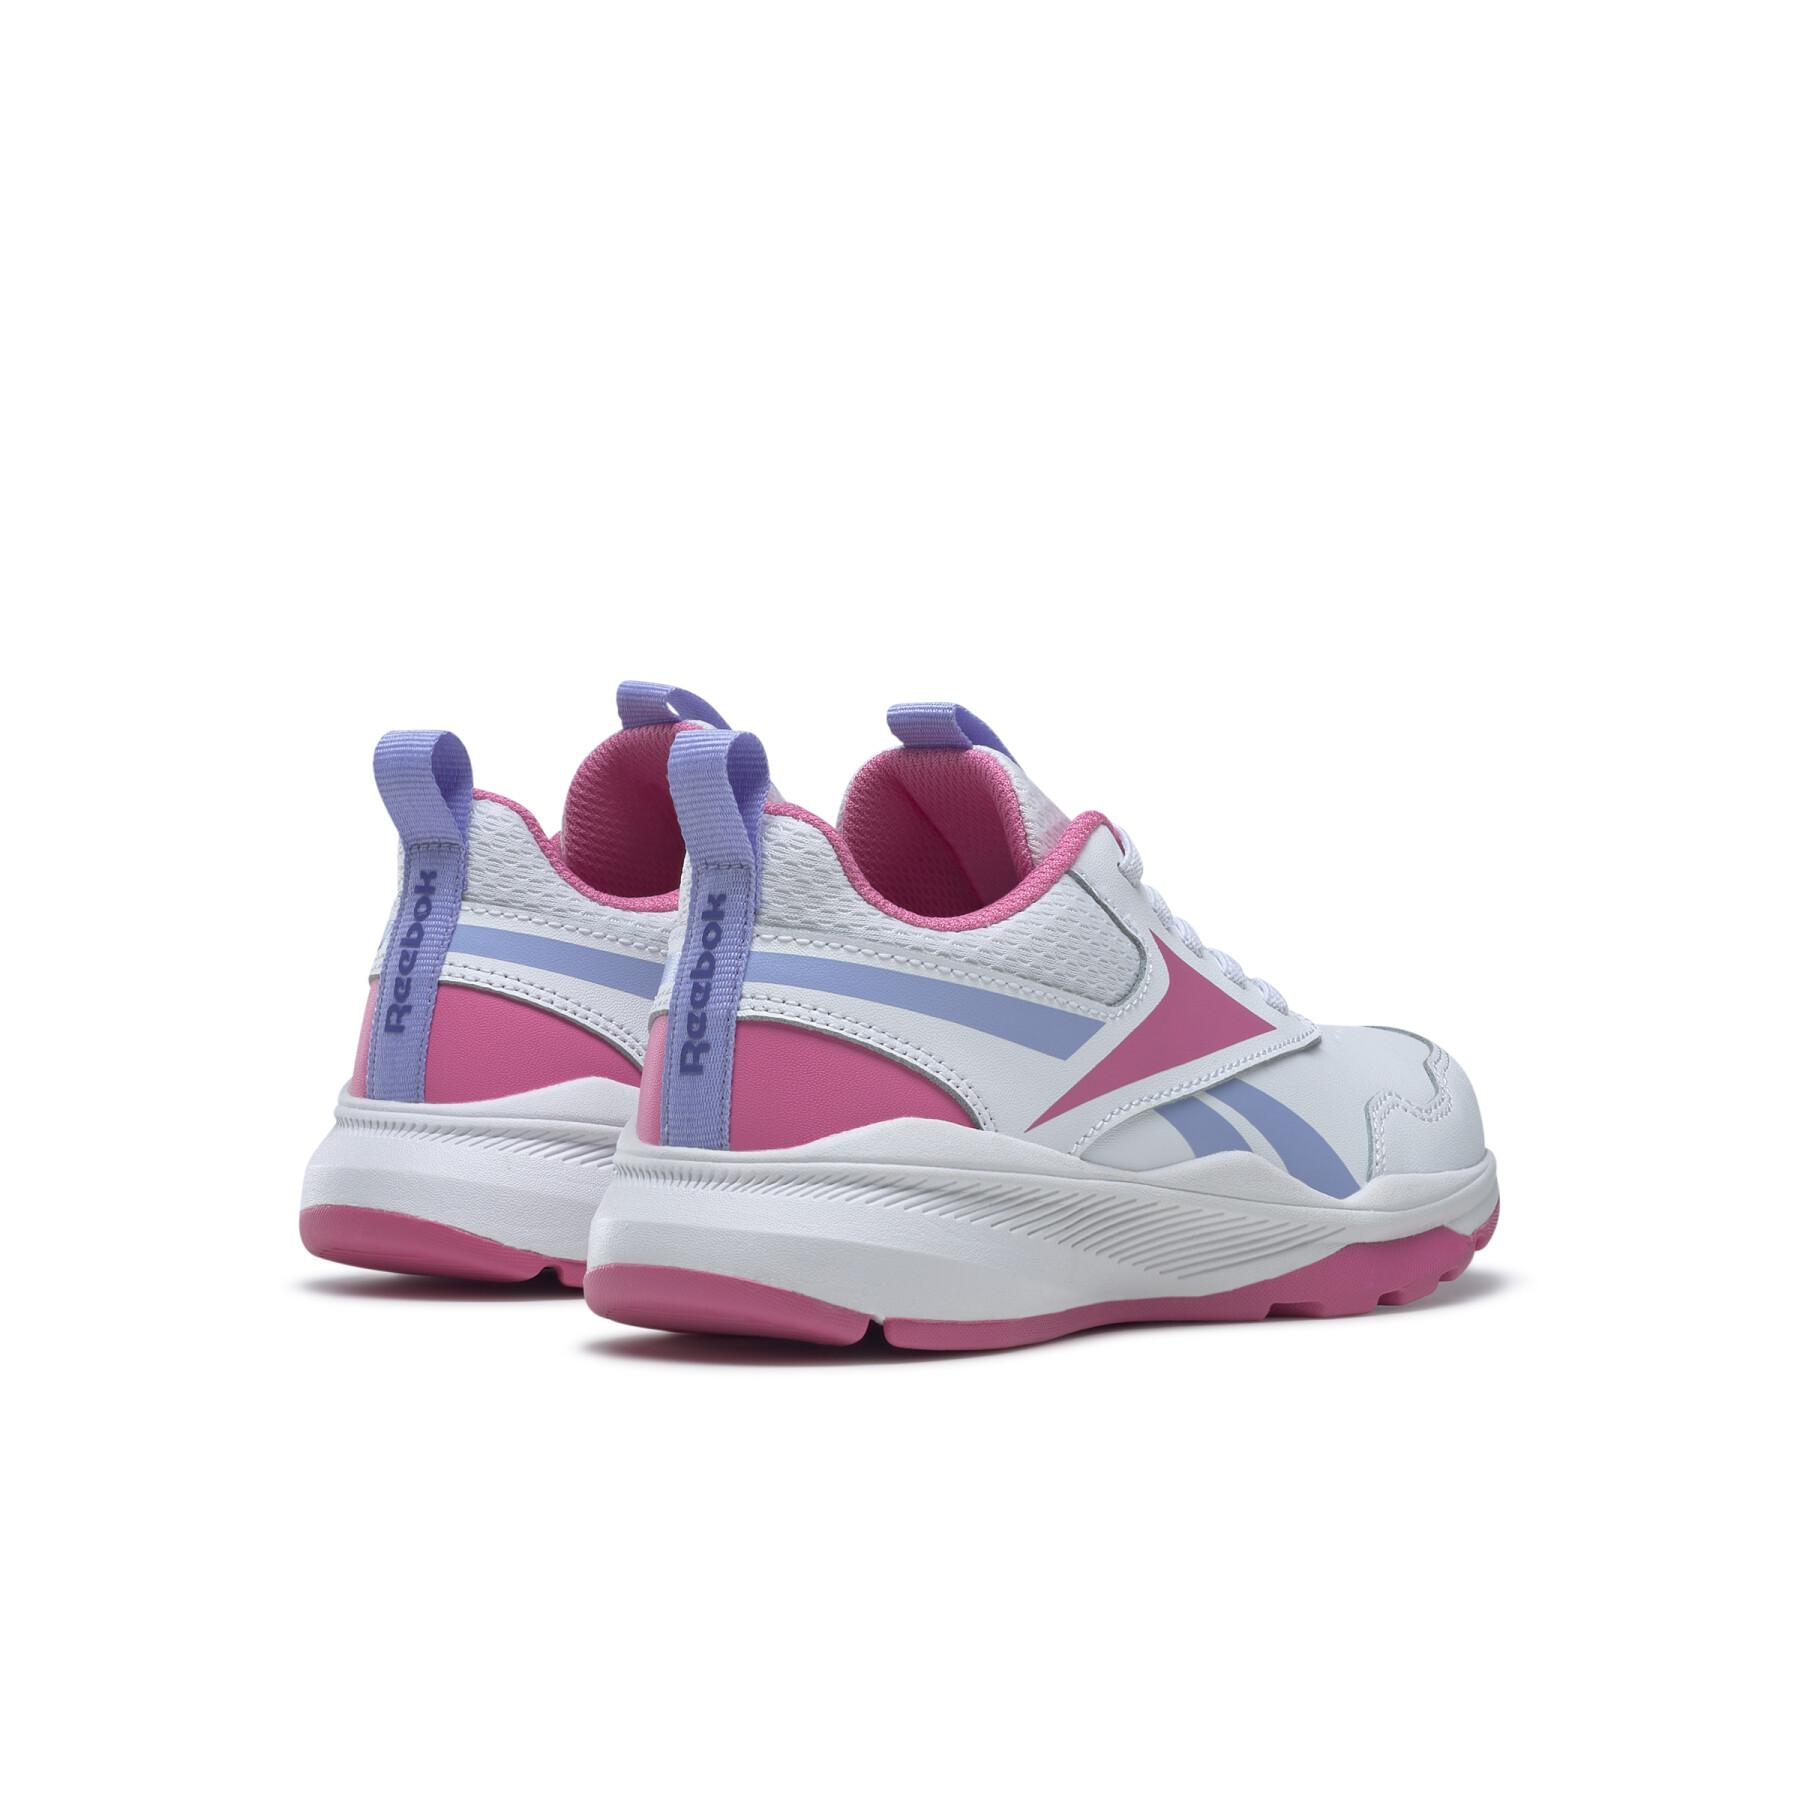 Children's running shoes Reebok Xt Sprinter 2 Alt